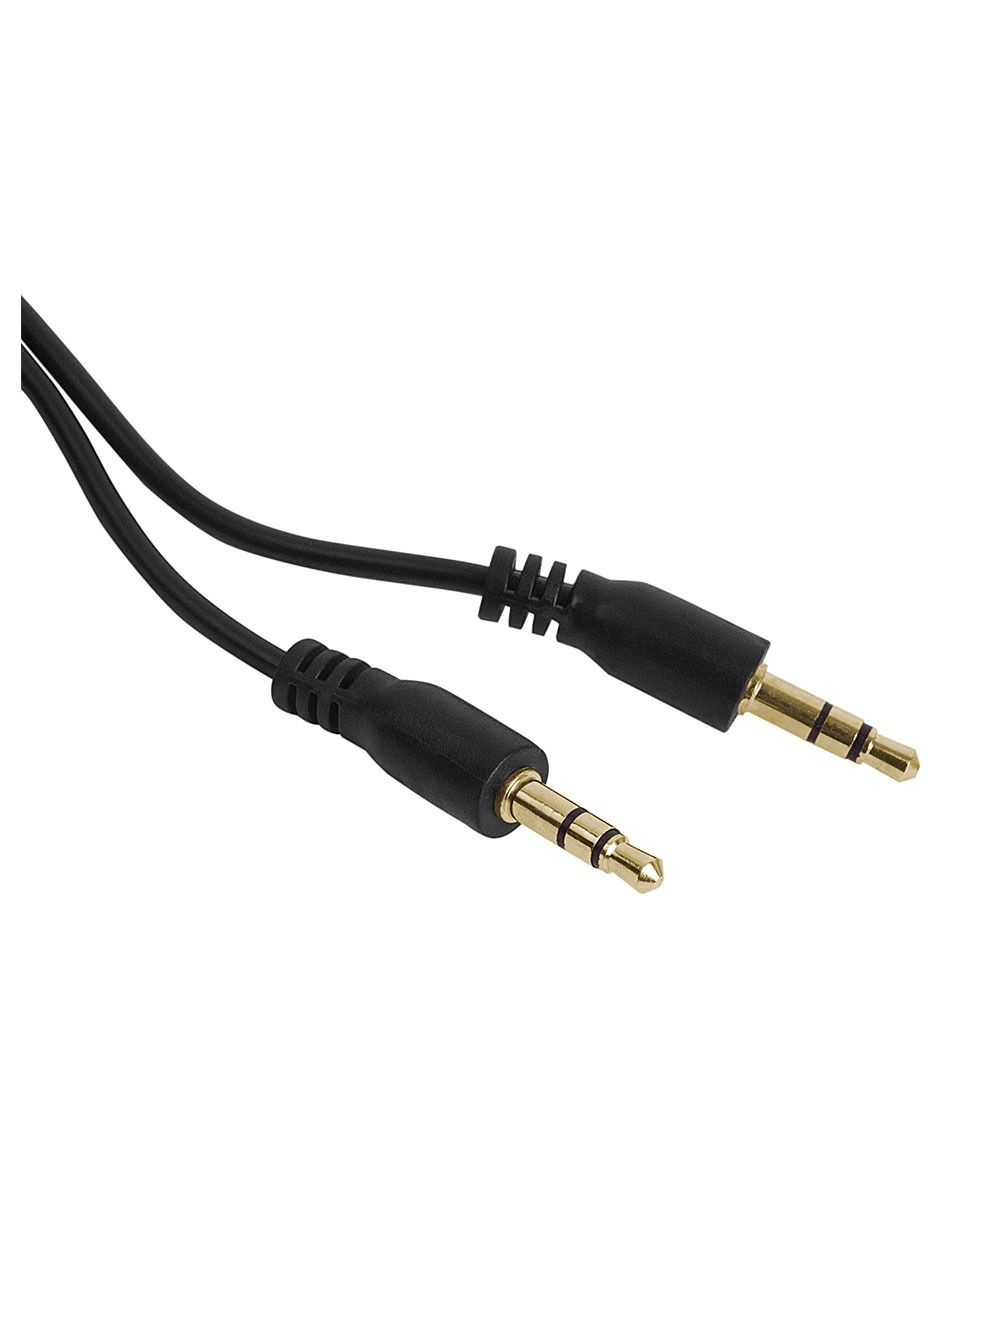 2B (CV076) - Cable AUX to AUX 3.5SP M-M -1M - Black